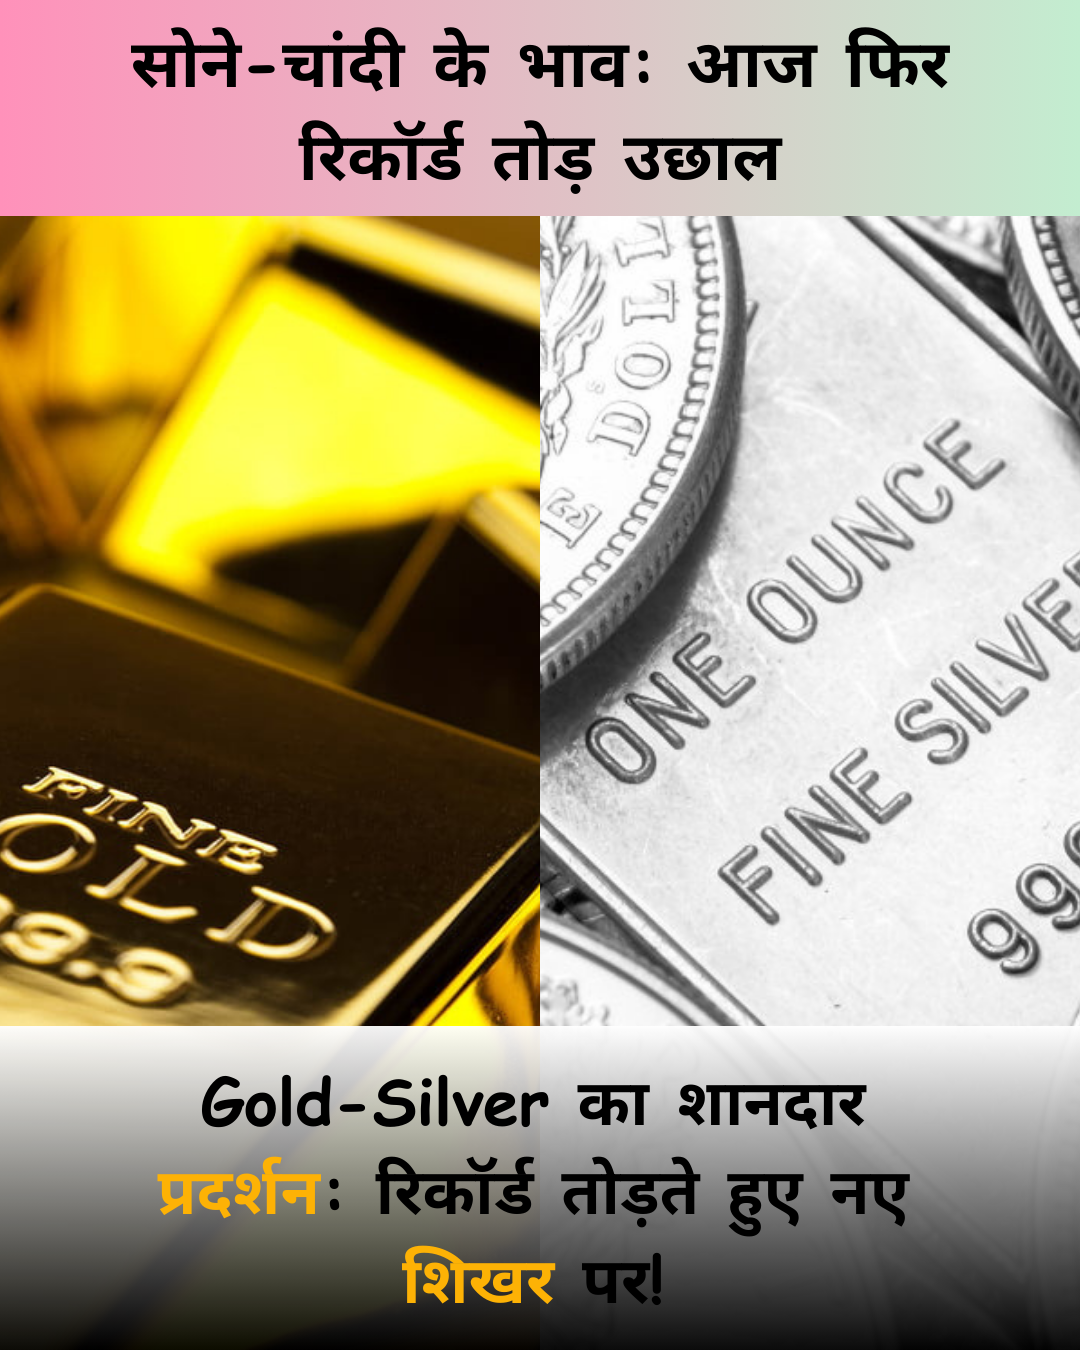 Gold-Silver के भाव: आज फिर रिकॉर्ड तोड़ उछाल, Gold 24 कैरेट 24,500 रुपए प्रति 10 ग्राम पर पहुंचा, Silver भी चमकी!!